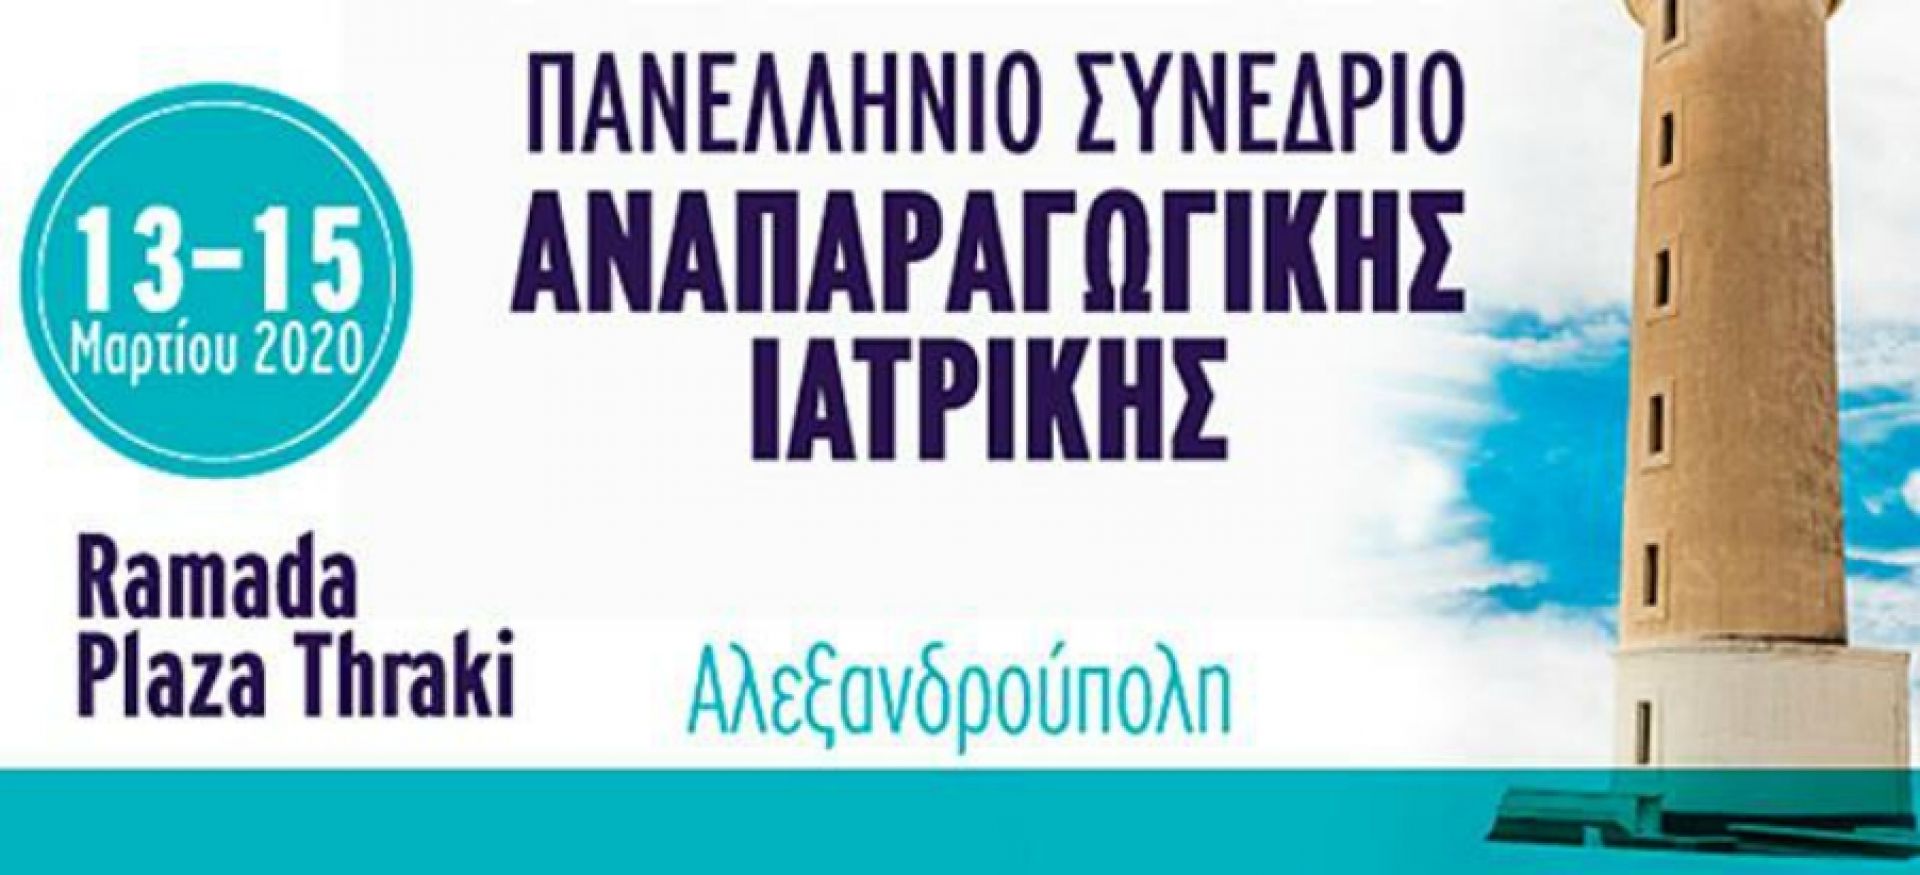 Με επιτυχία στέφθηκε το “3ο Πανελλήνιο Συνέδριο Αναπαραγωγικής Ιατρικής” στην ακριτική Αλεξανδρούπολη